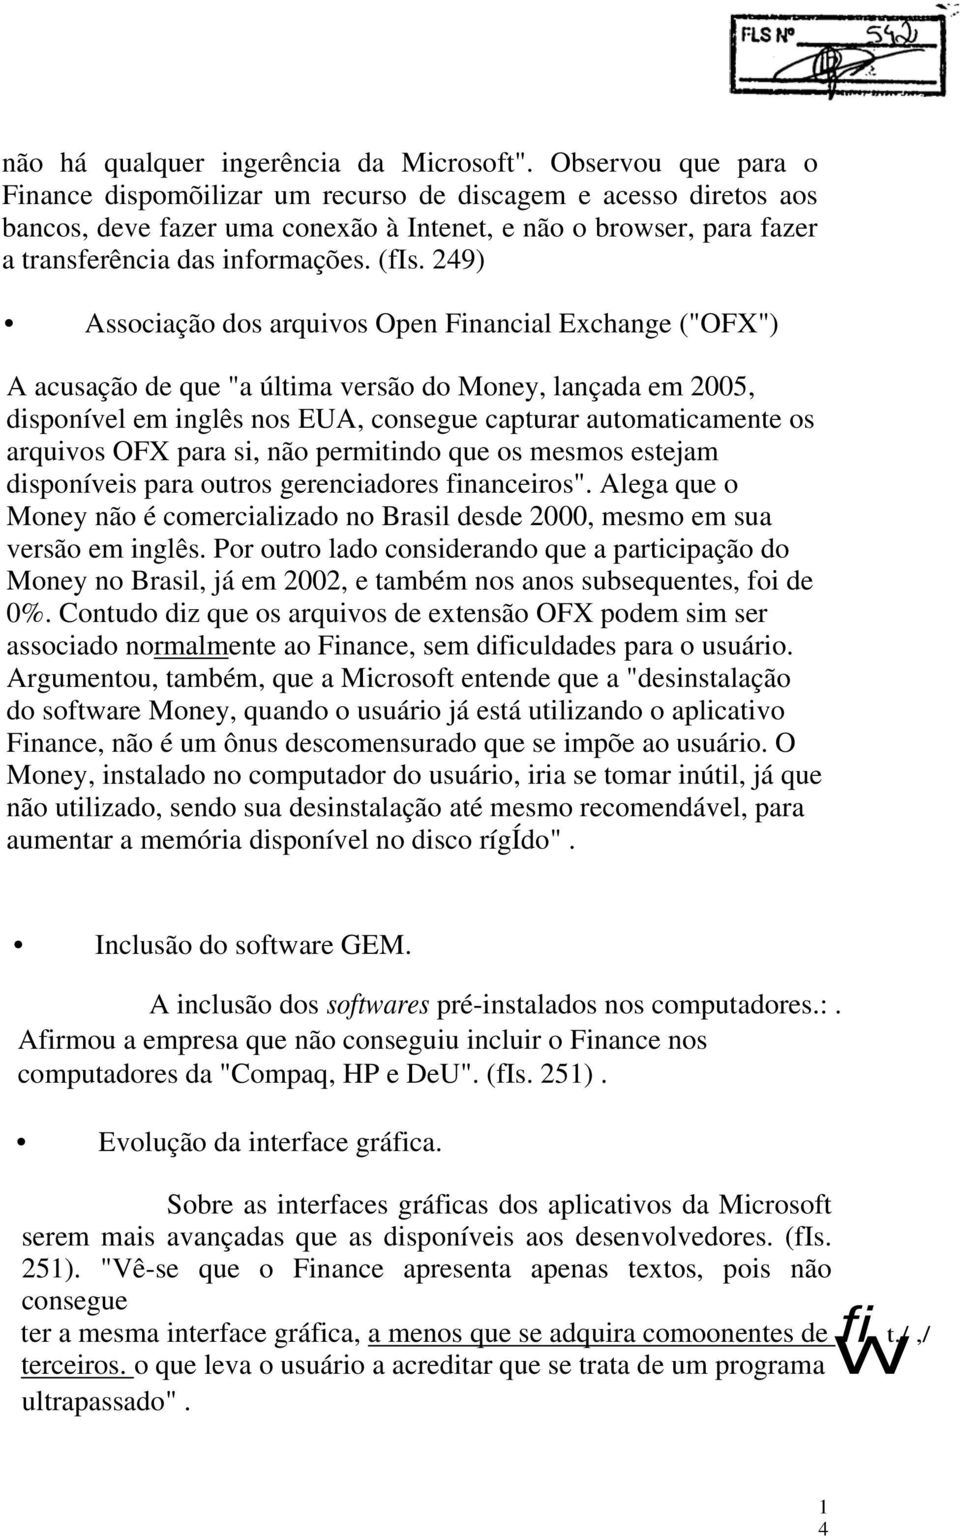 249) Associação dos arquivos Open Financial Exchange ("OFX") A acusação de que "a última versão do Money, lançada em 2005, disponível em inglês nos EUA, consegue capturar automaticamente os arquivos